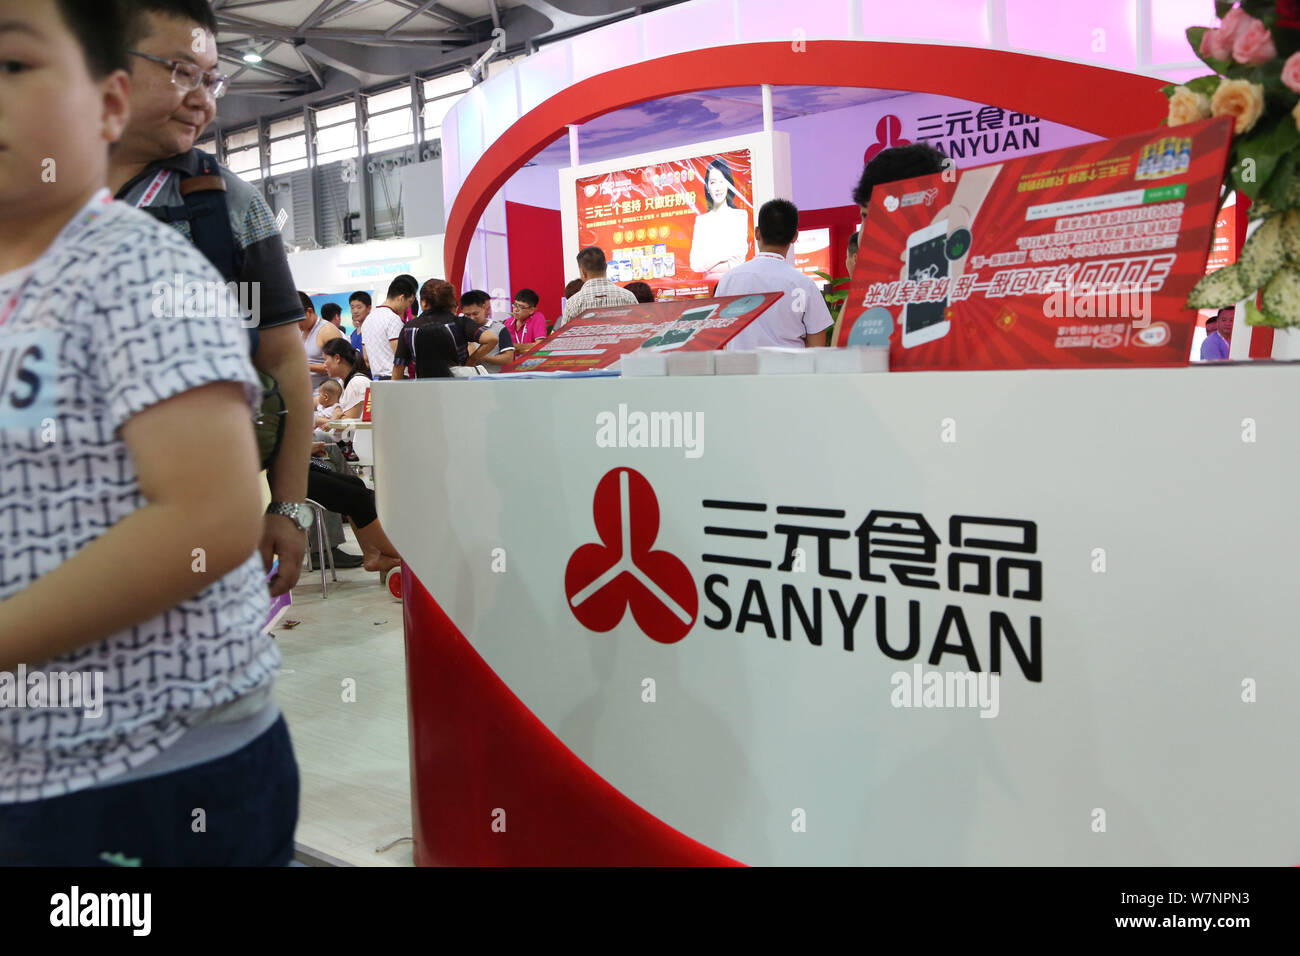 ---- Leute besuchen Sie den Stand von Beijing Sanyuan Essen während einer Ausstellung in Shanghai, China, 22. Juli 2015. Der chinesischen Staatsbetriebe Peking Stockfoto